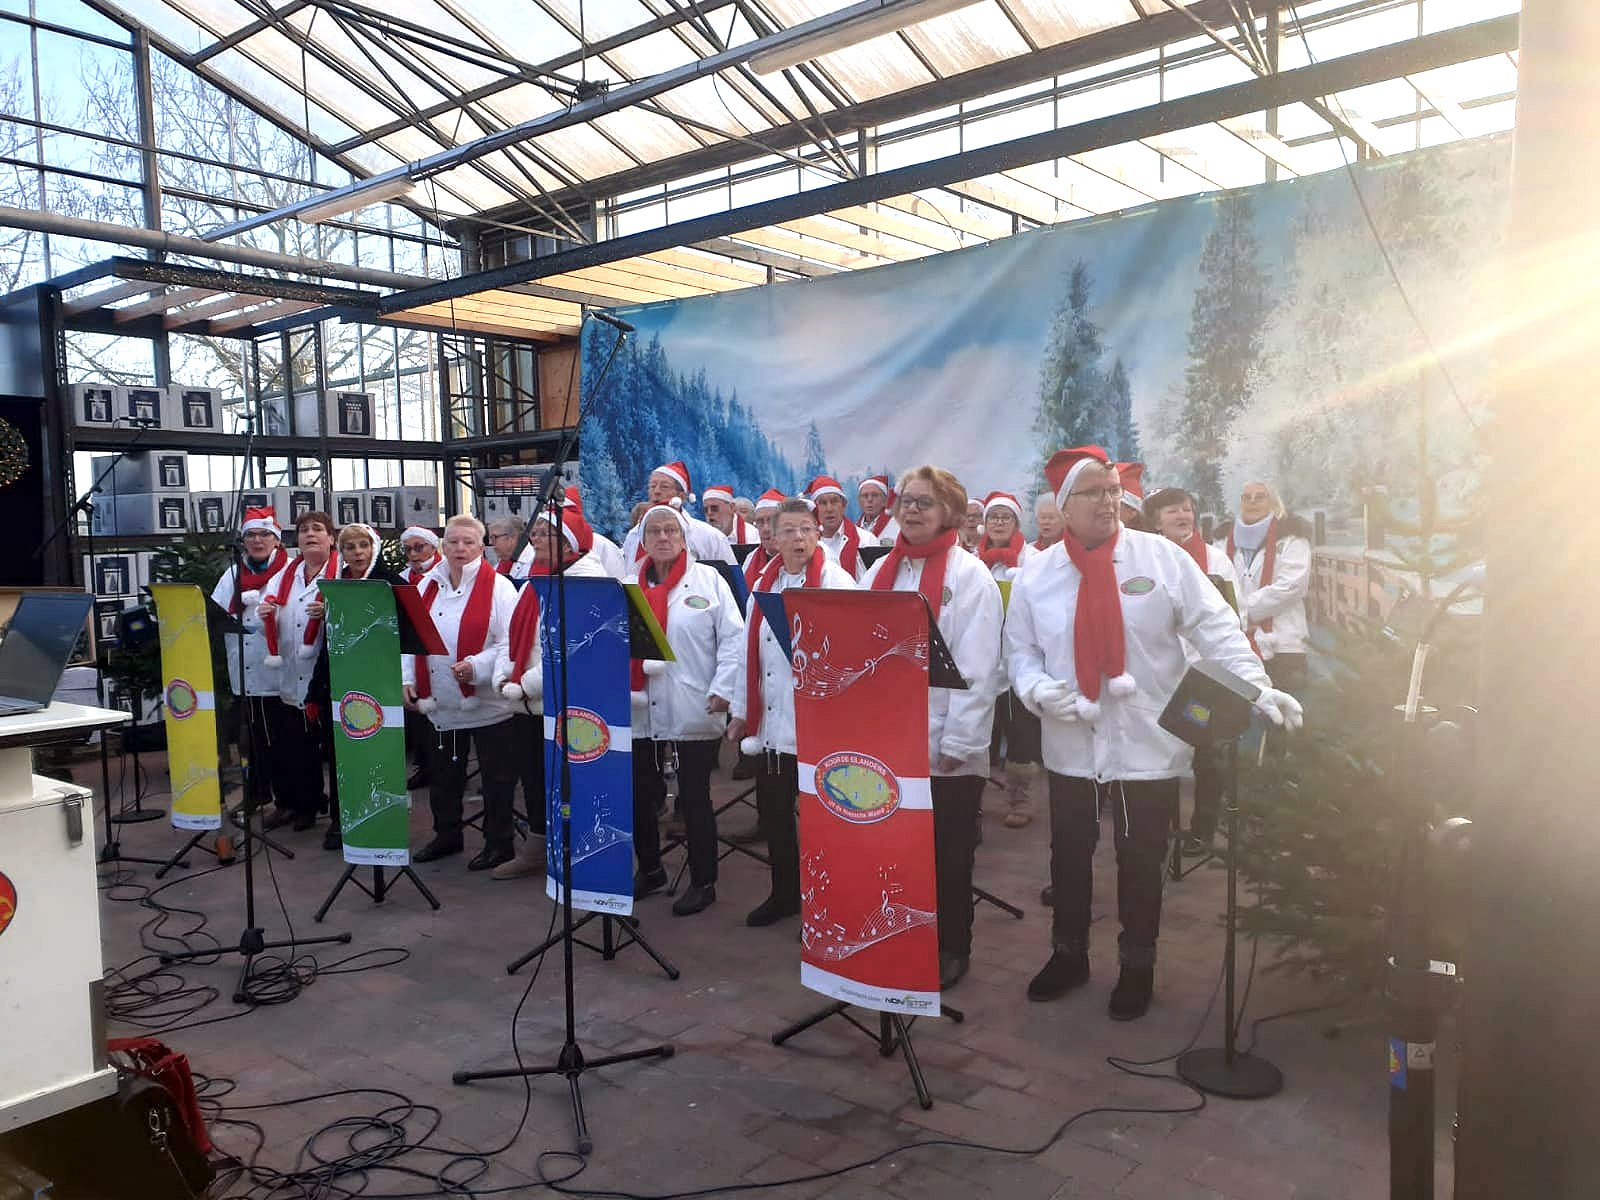 Kerstoptreden in Intratuin in Numansdorp, zaterdag 17 december 2022